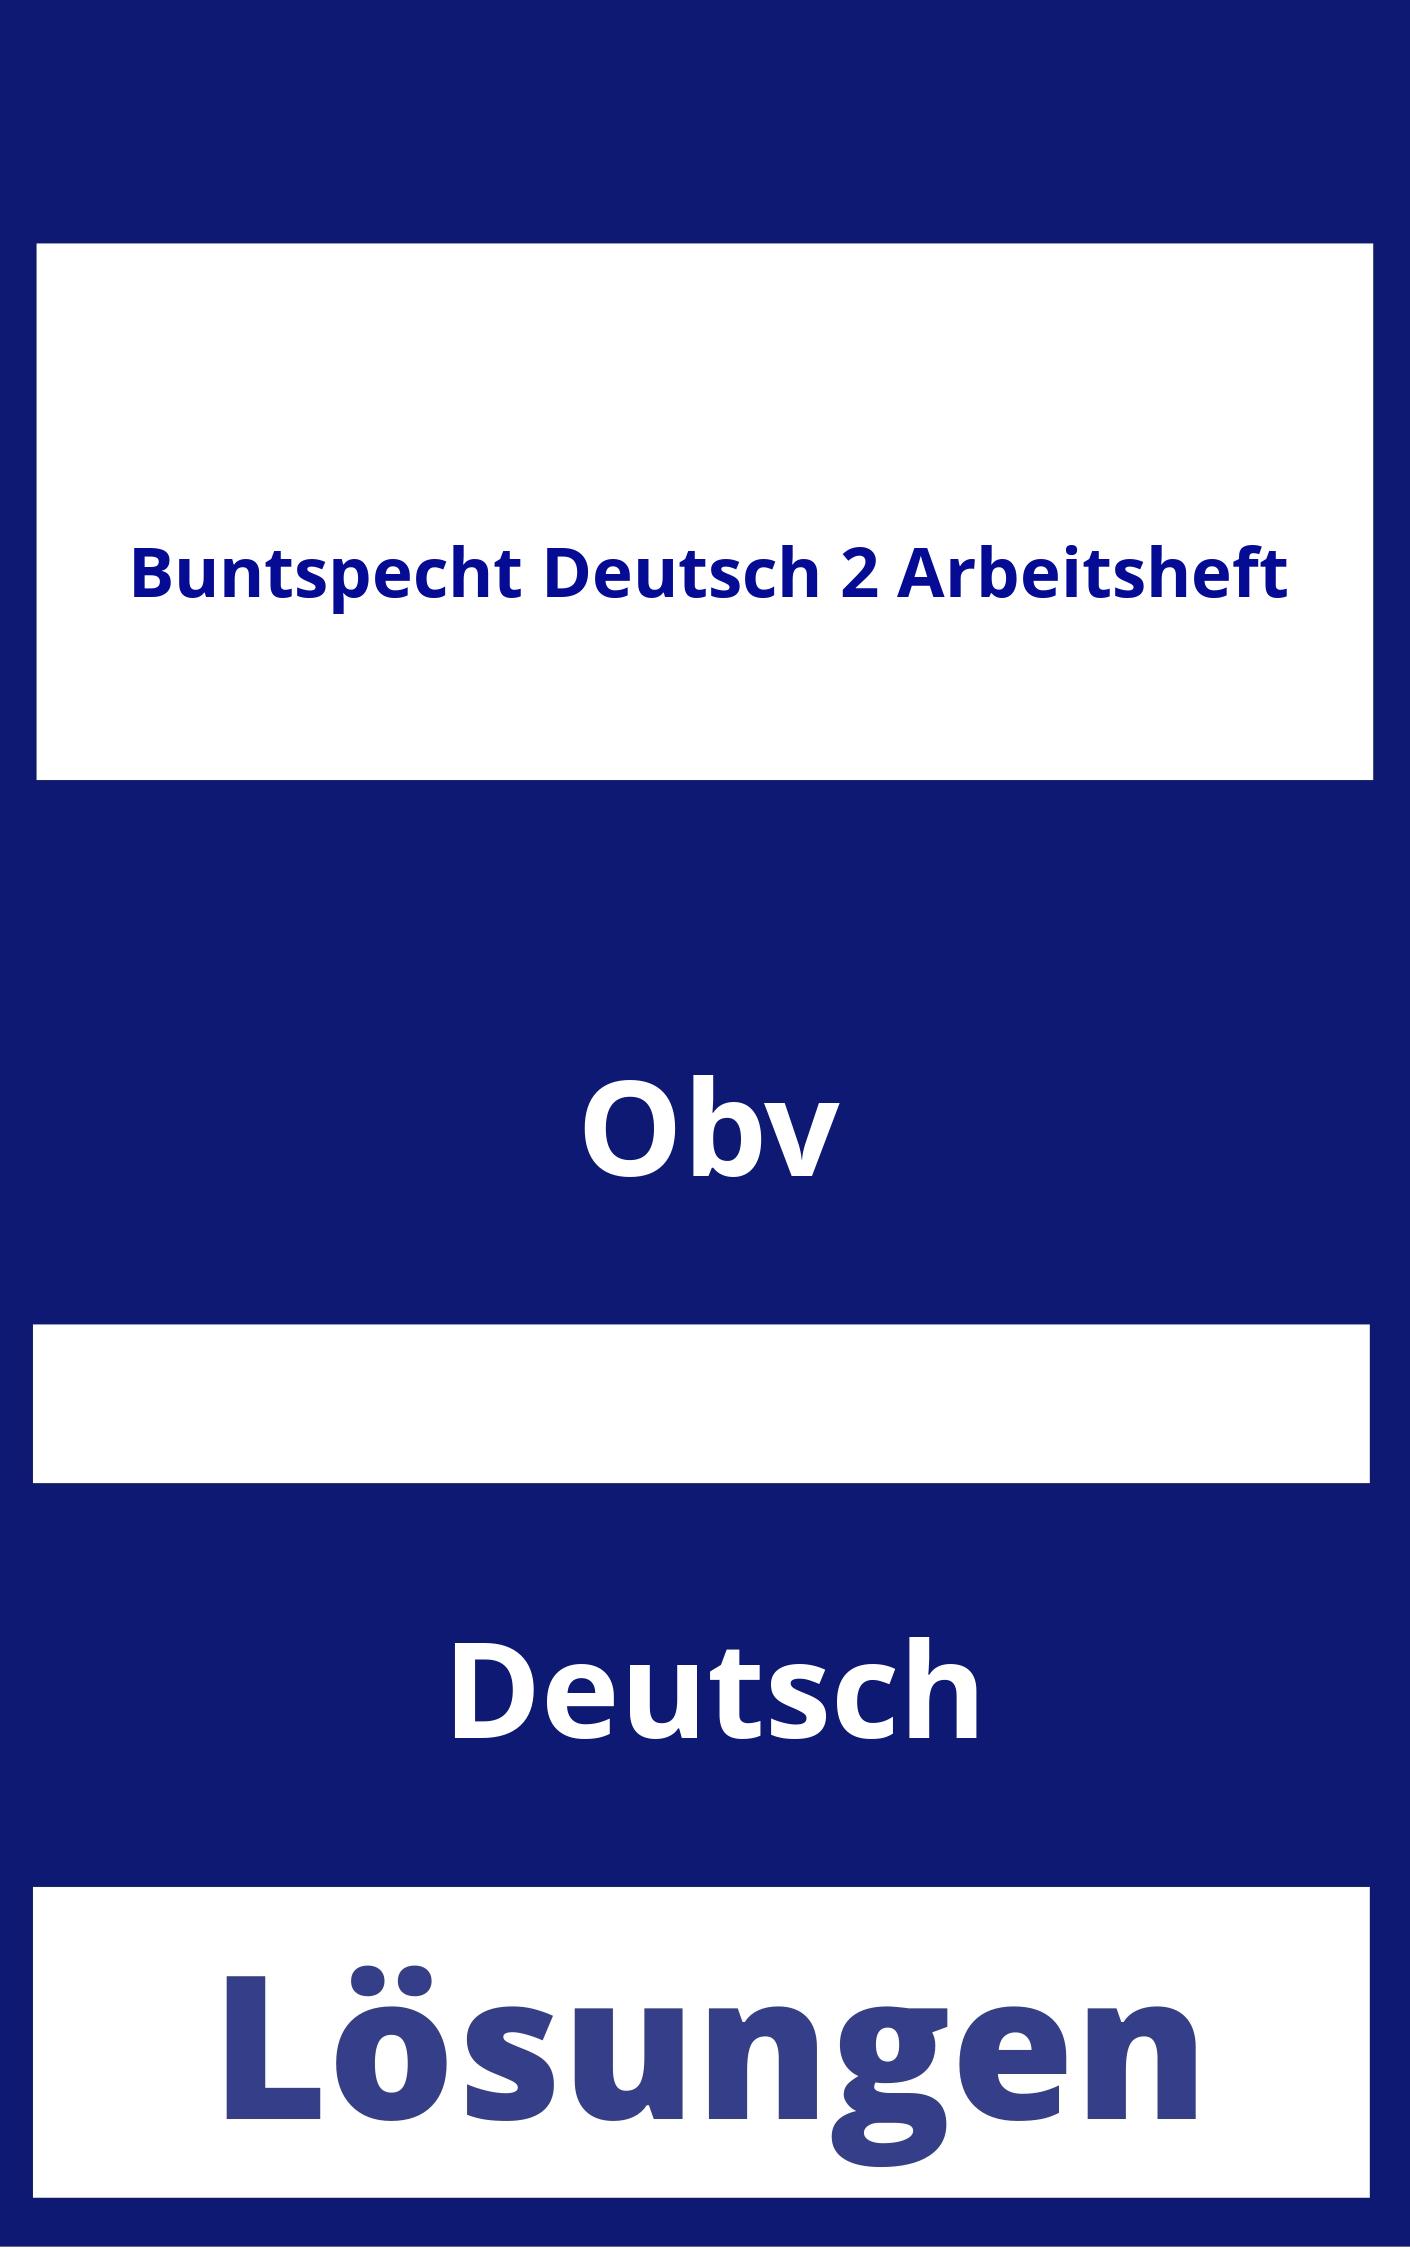 Buntspecht Deutsch 2 Arbeitsheft Lösungen PDF